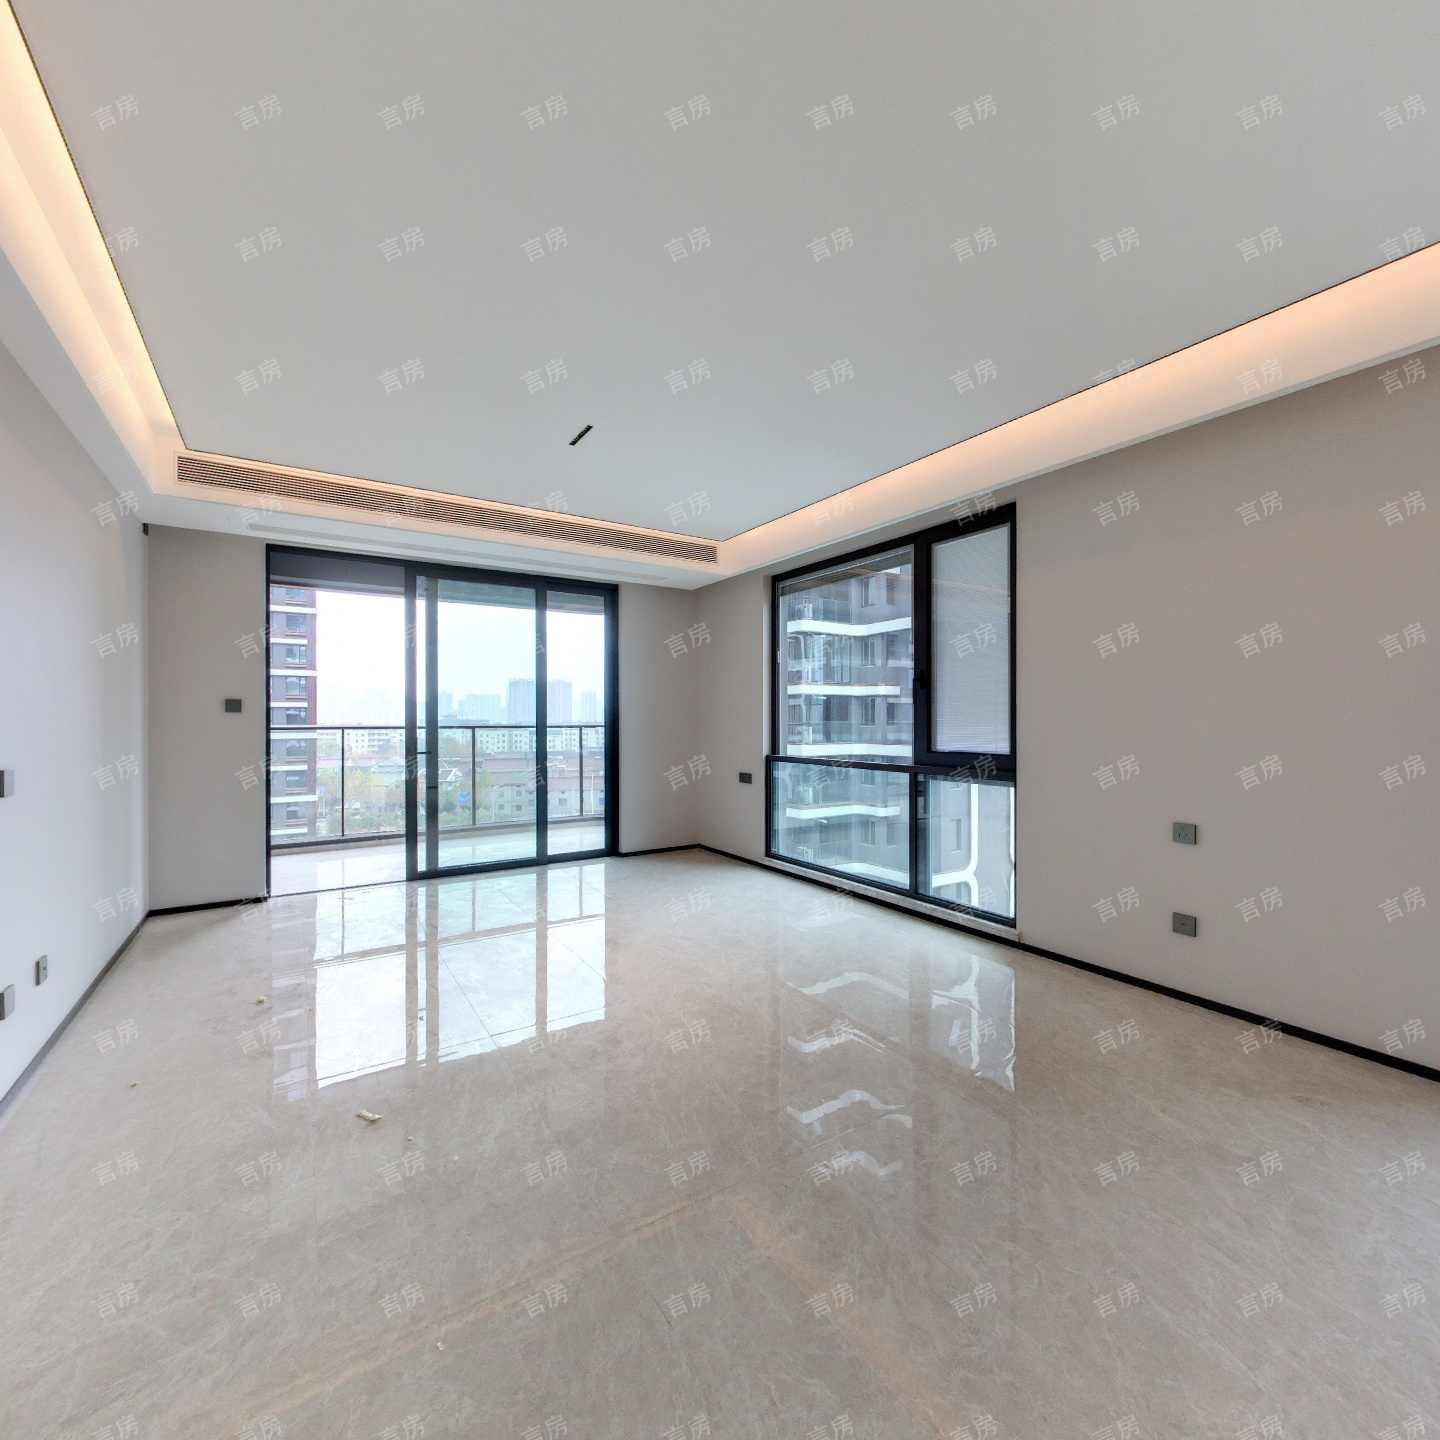 全新一代住宅 铝板热弯玻璃外立面 边厅户型设计